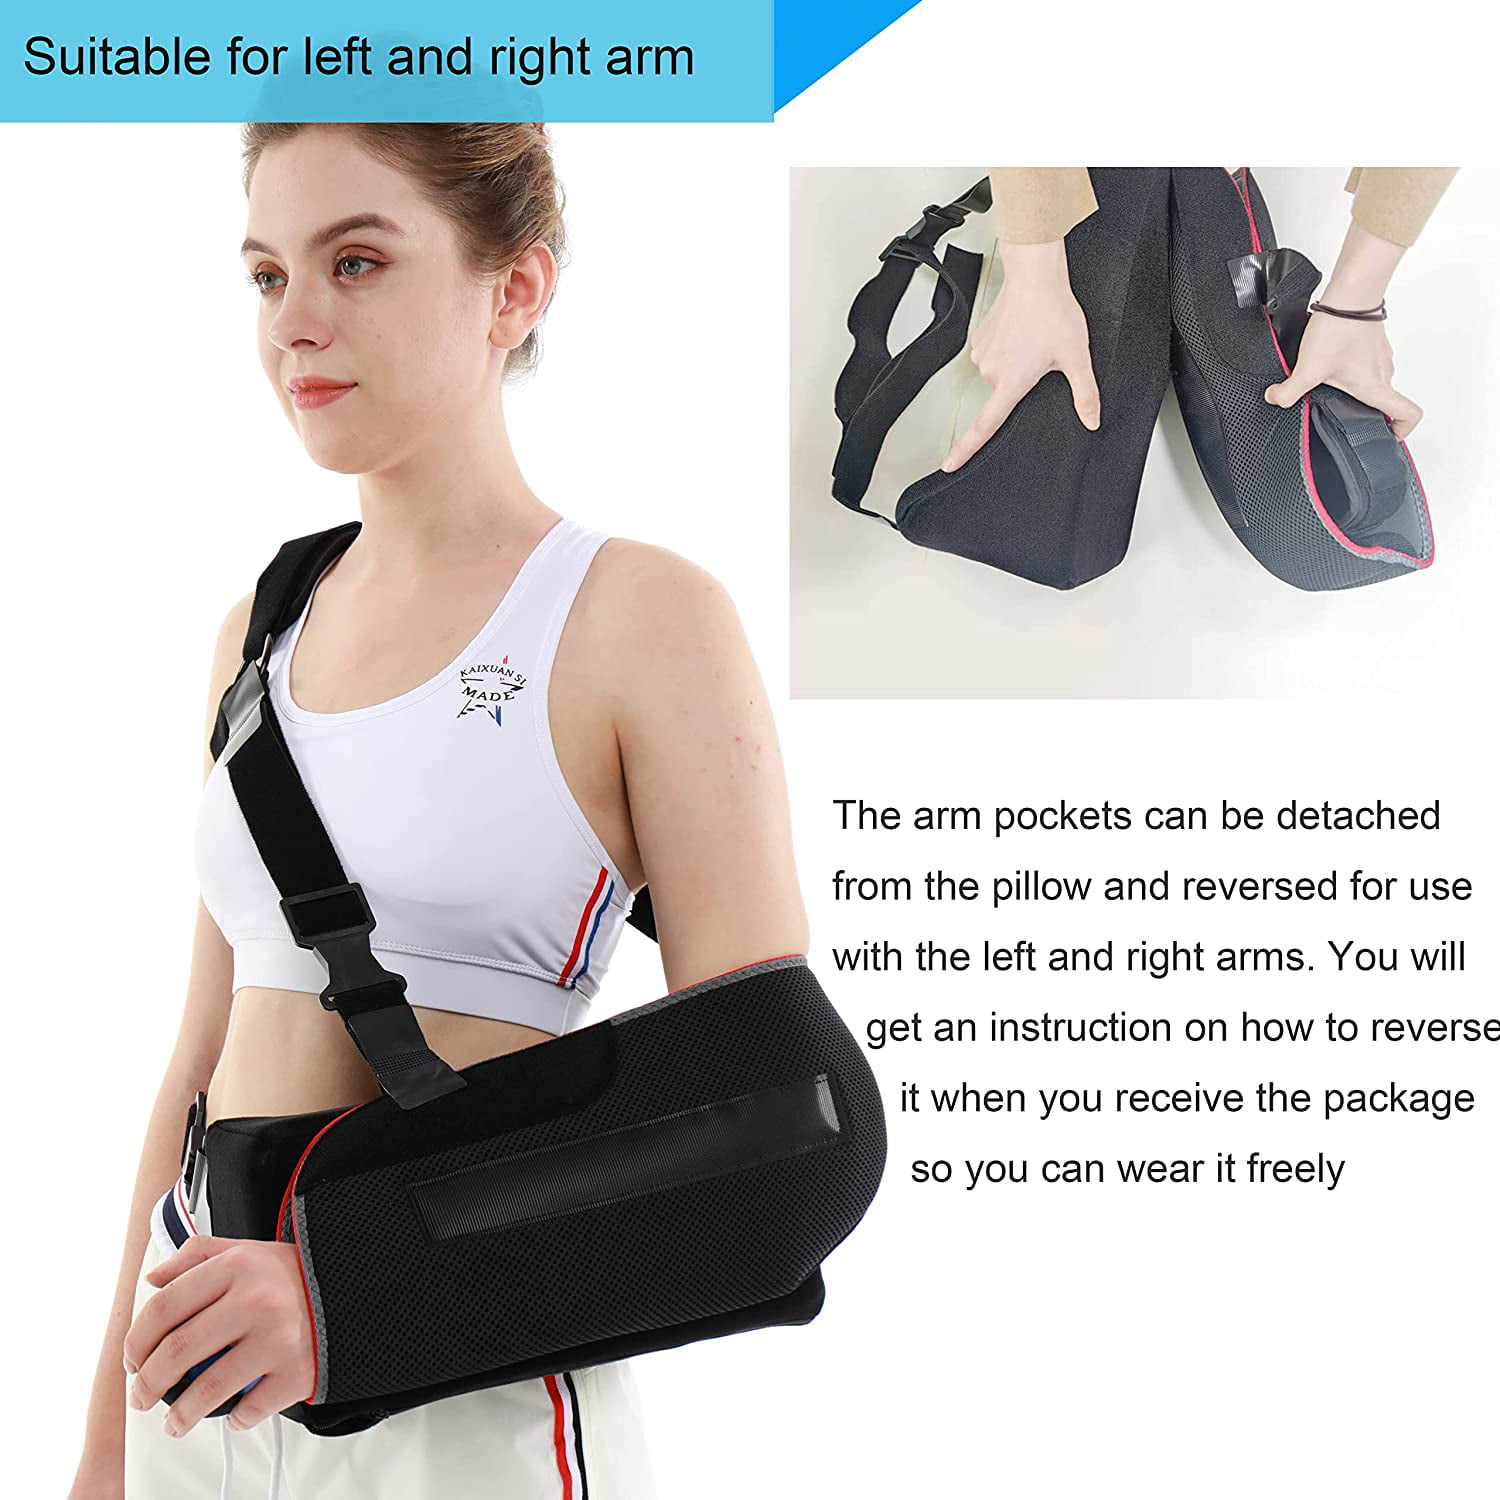 Shoulder ABDuction Pillow 15° - BraceID